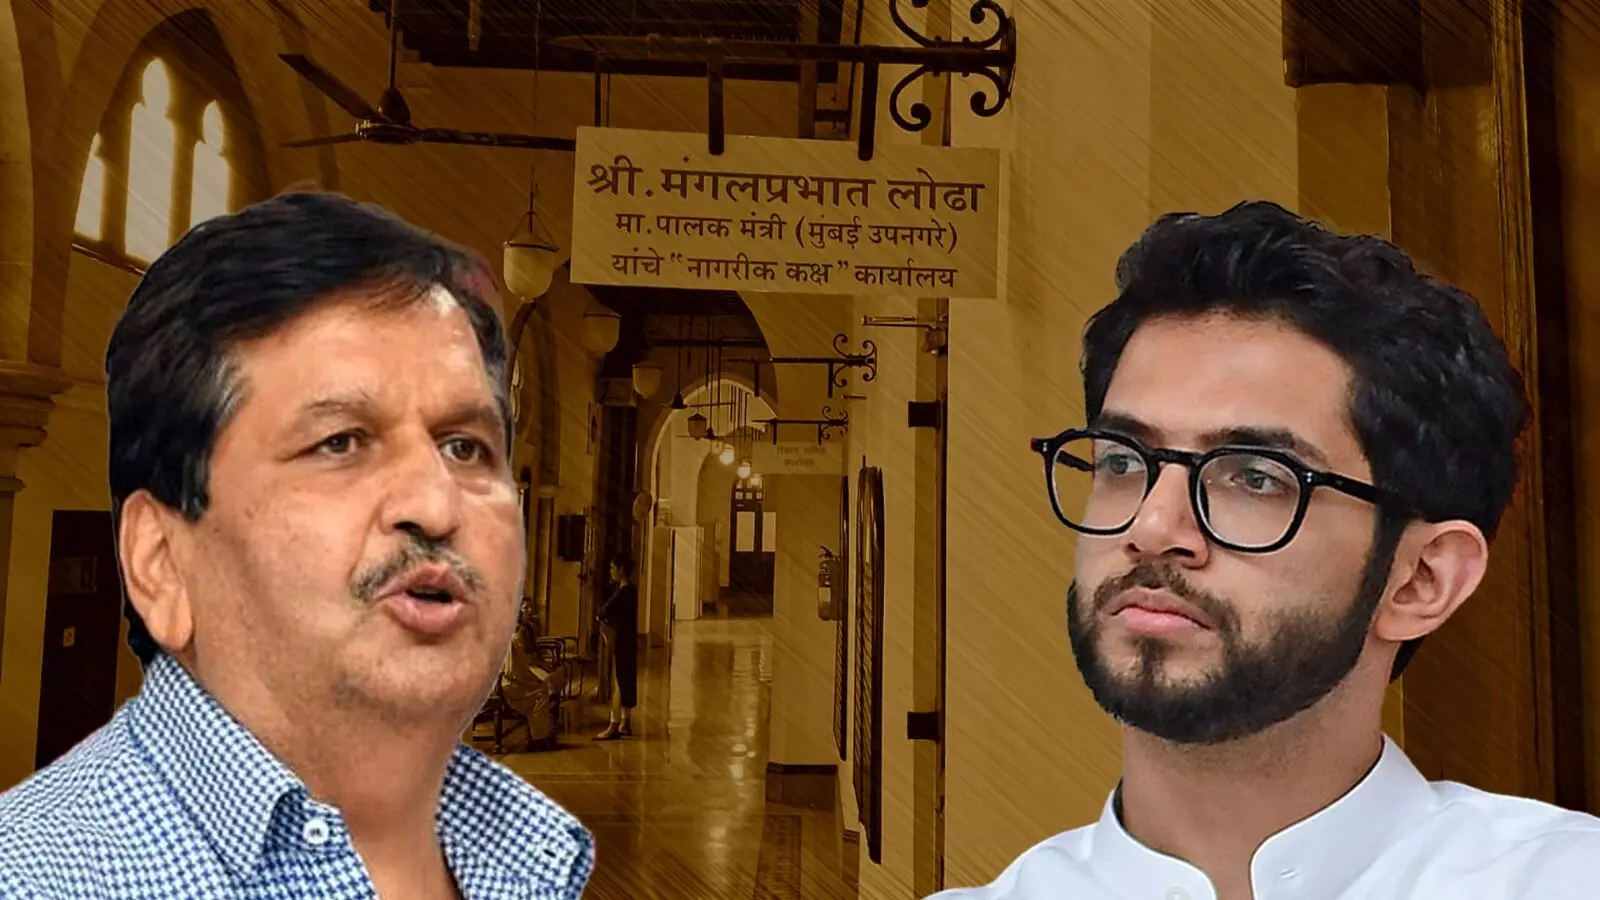 मुंबई महापालिकेतील पालकमंत्री लोढांचं कार्यालयं २४ तासात रिकामं करा, आदित्य ठाकरेंनी दिला इशारा